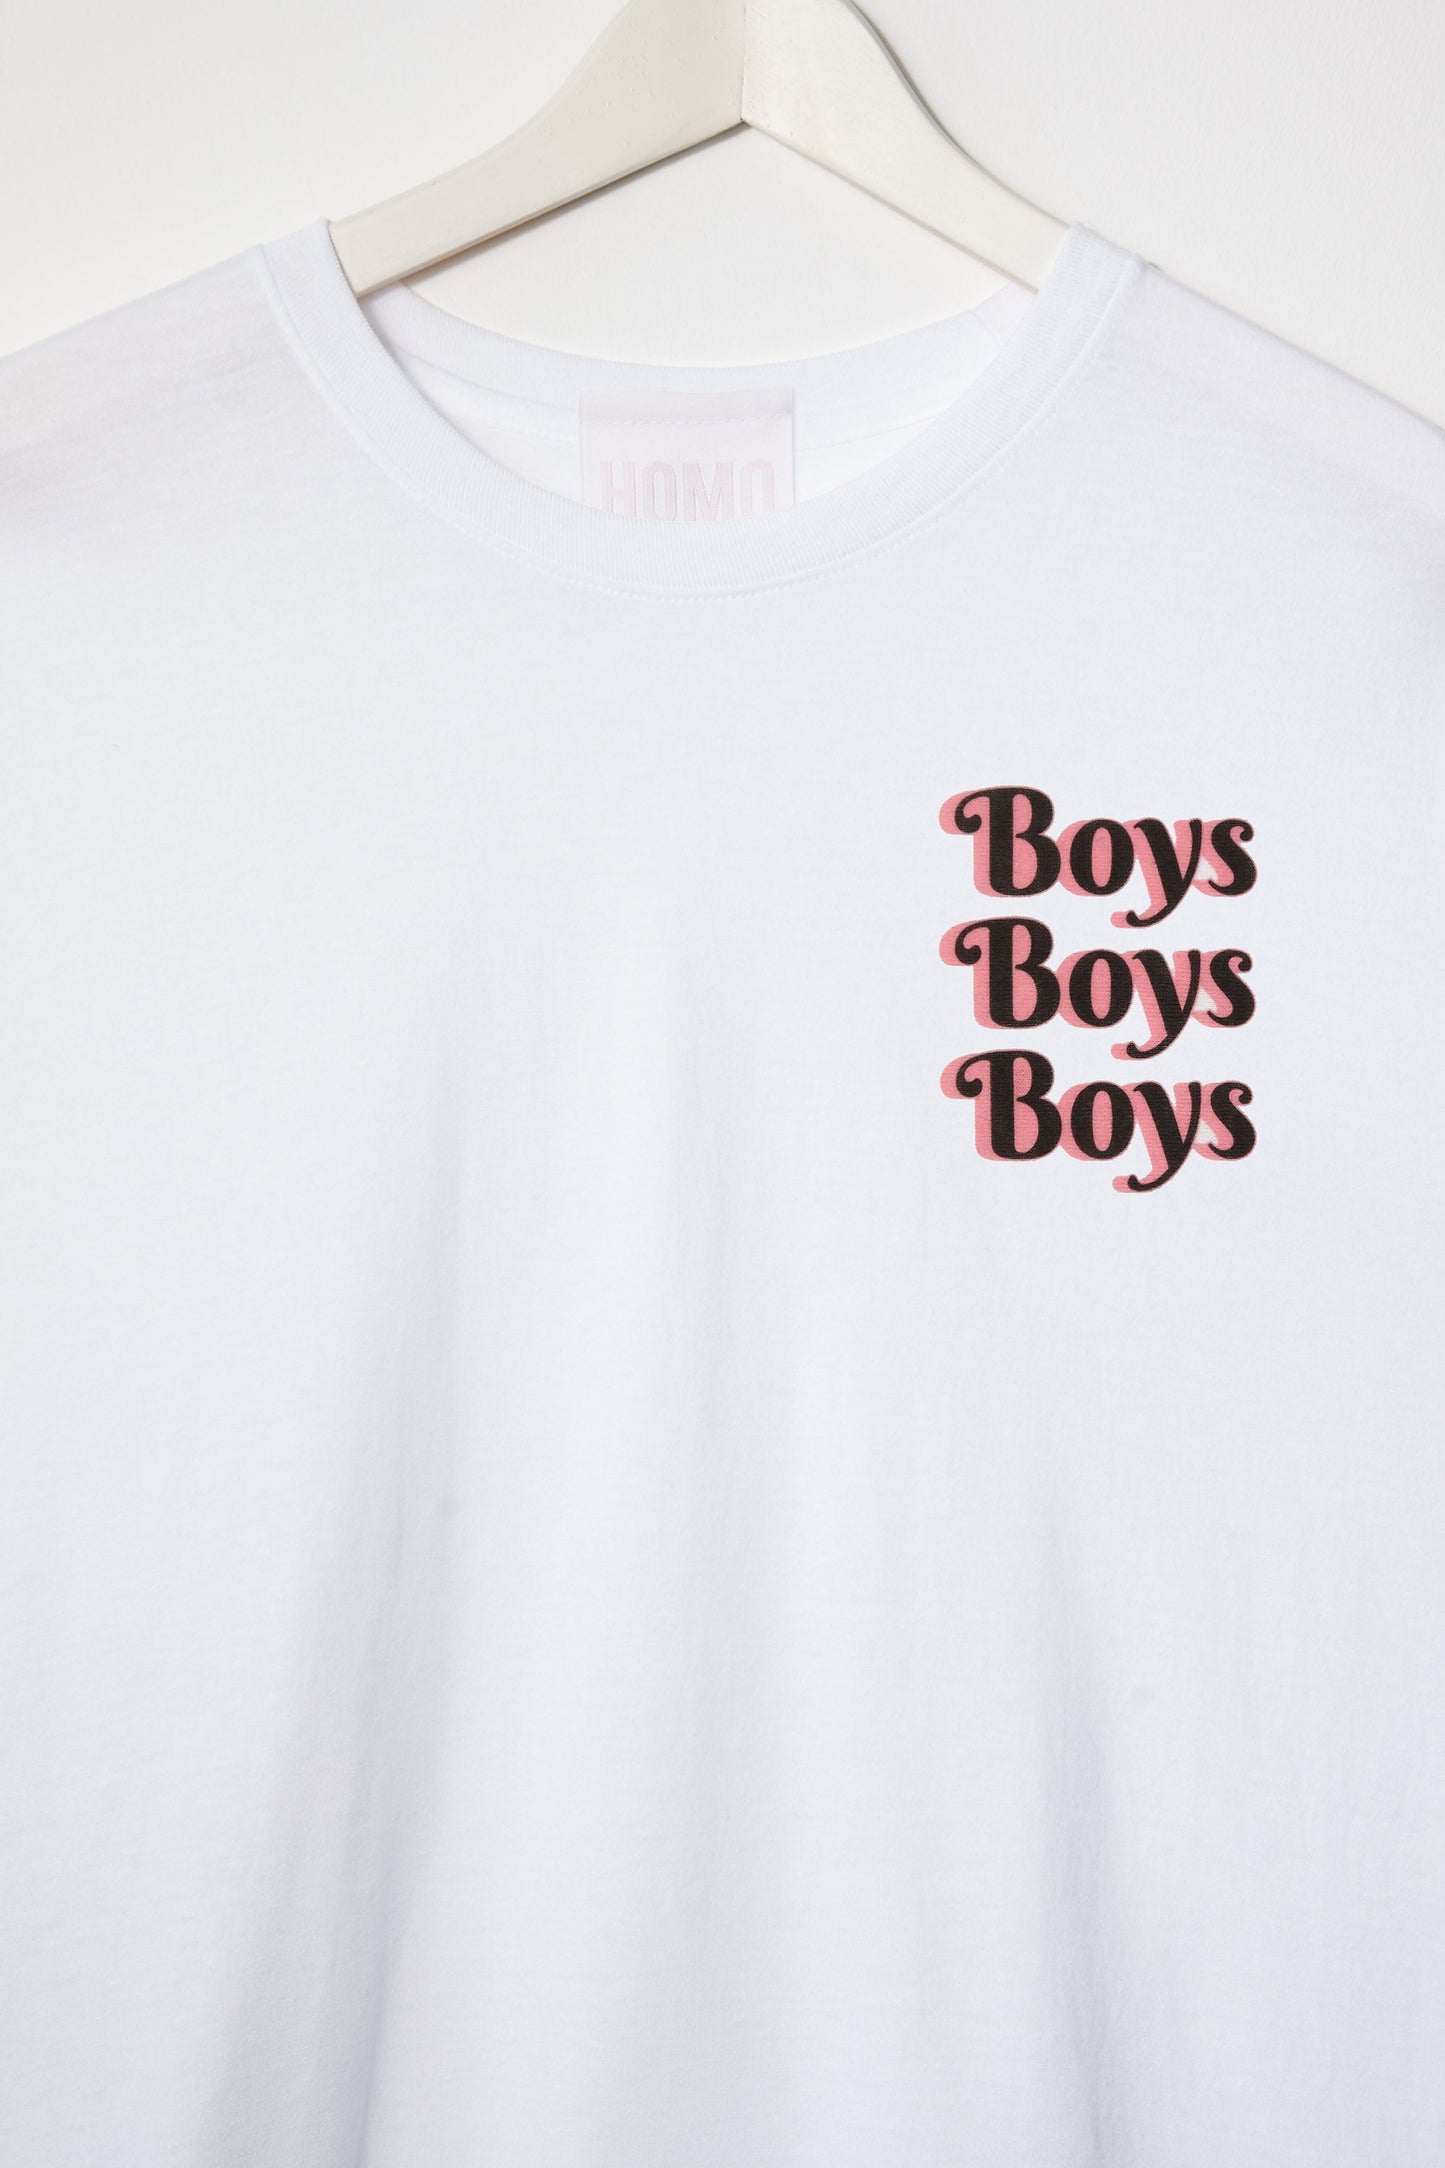 Boys Boys Boys - Tee